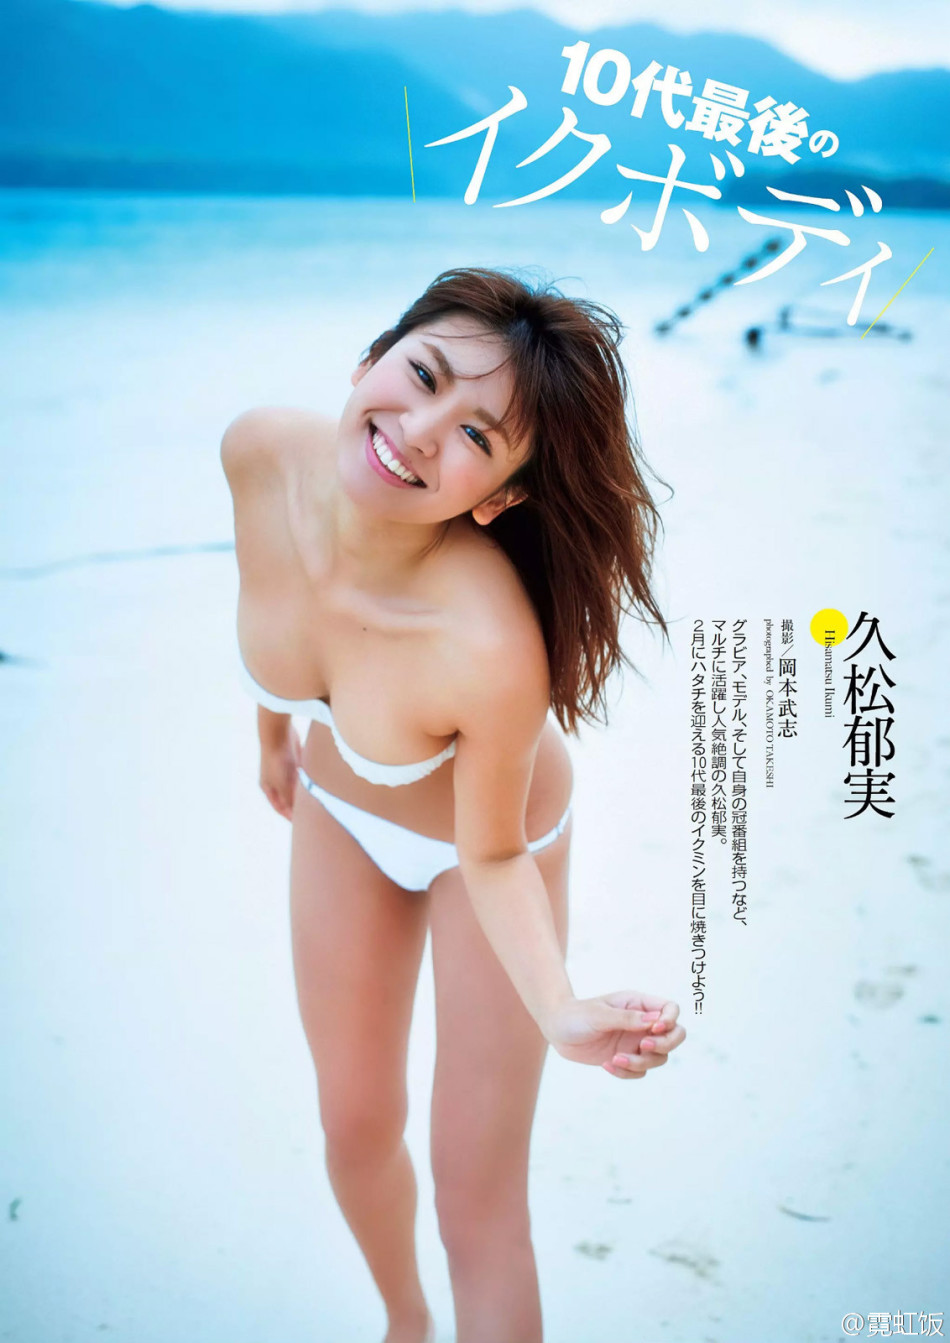 日本写真女星久松郁实浴缸泳衣写真惹人遐想